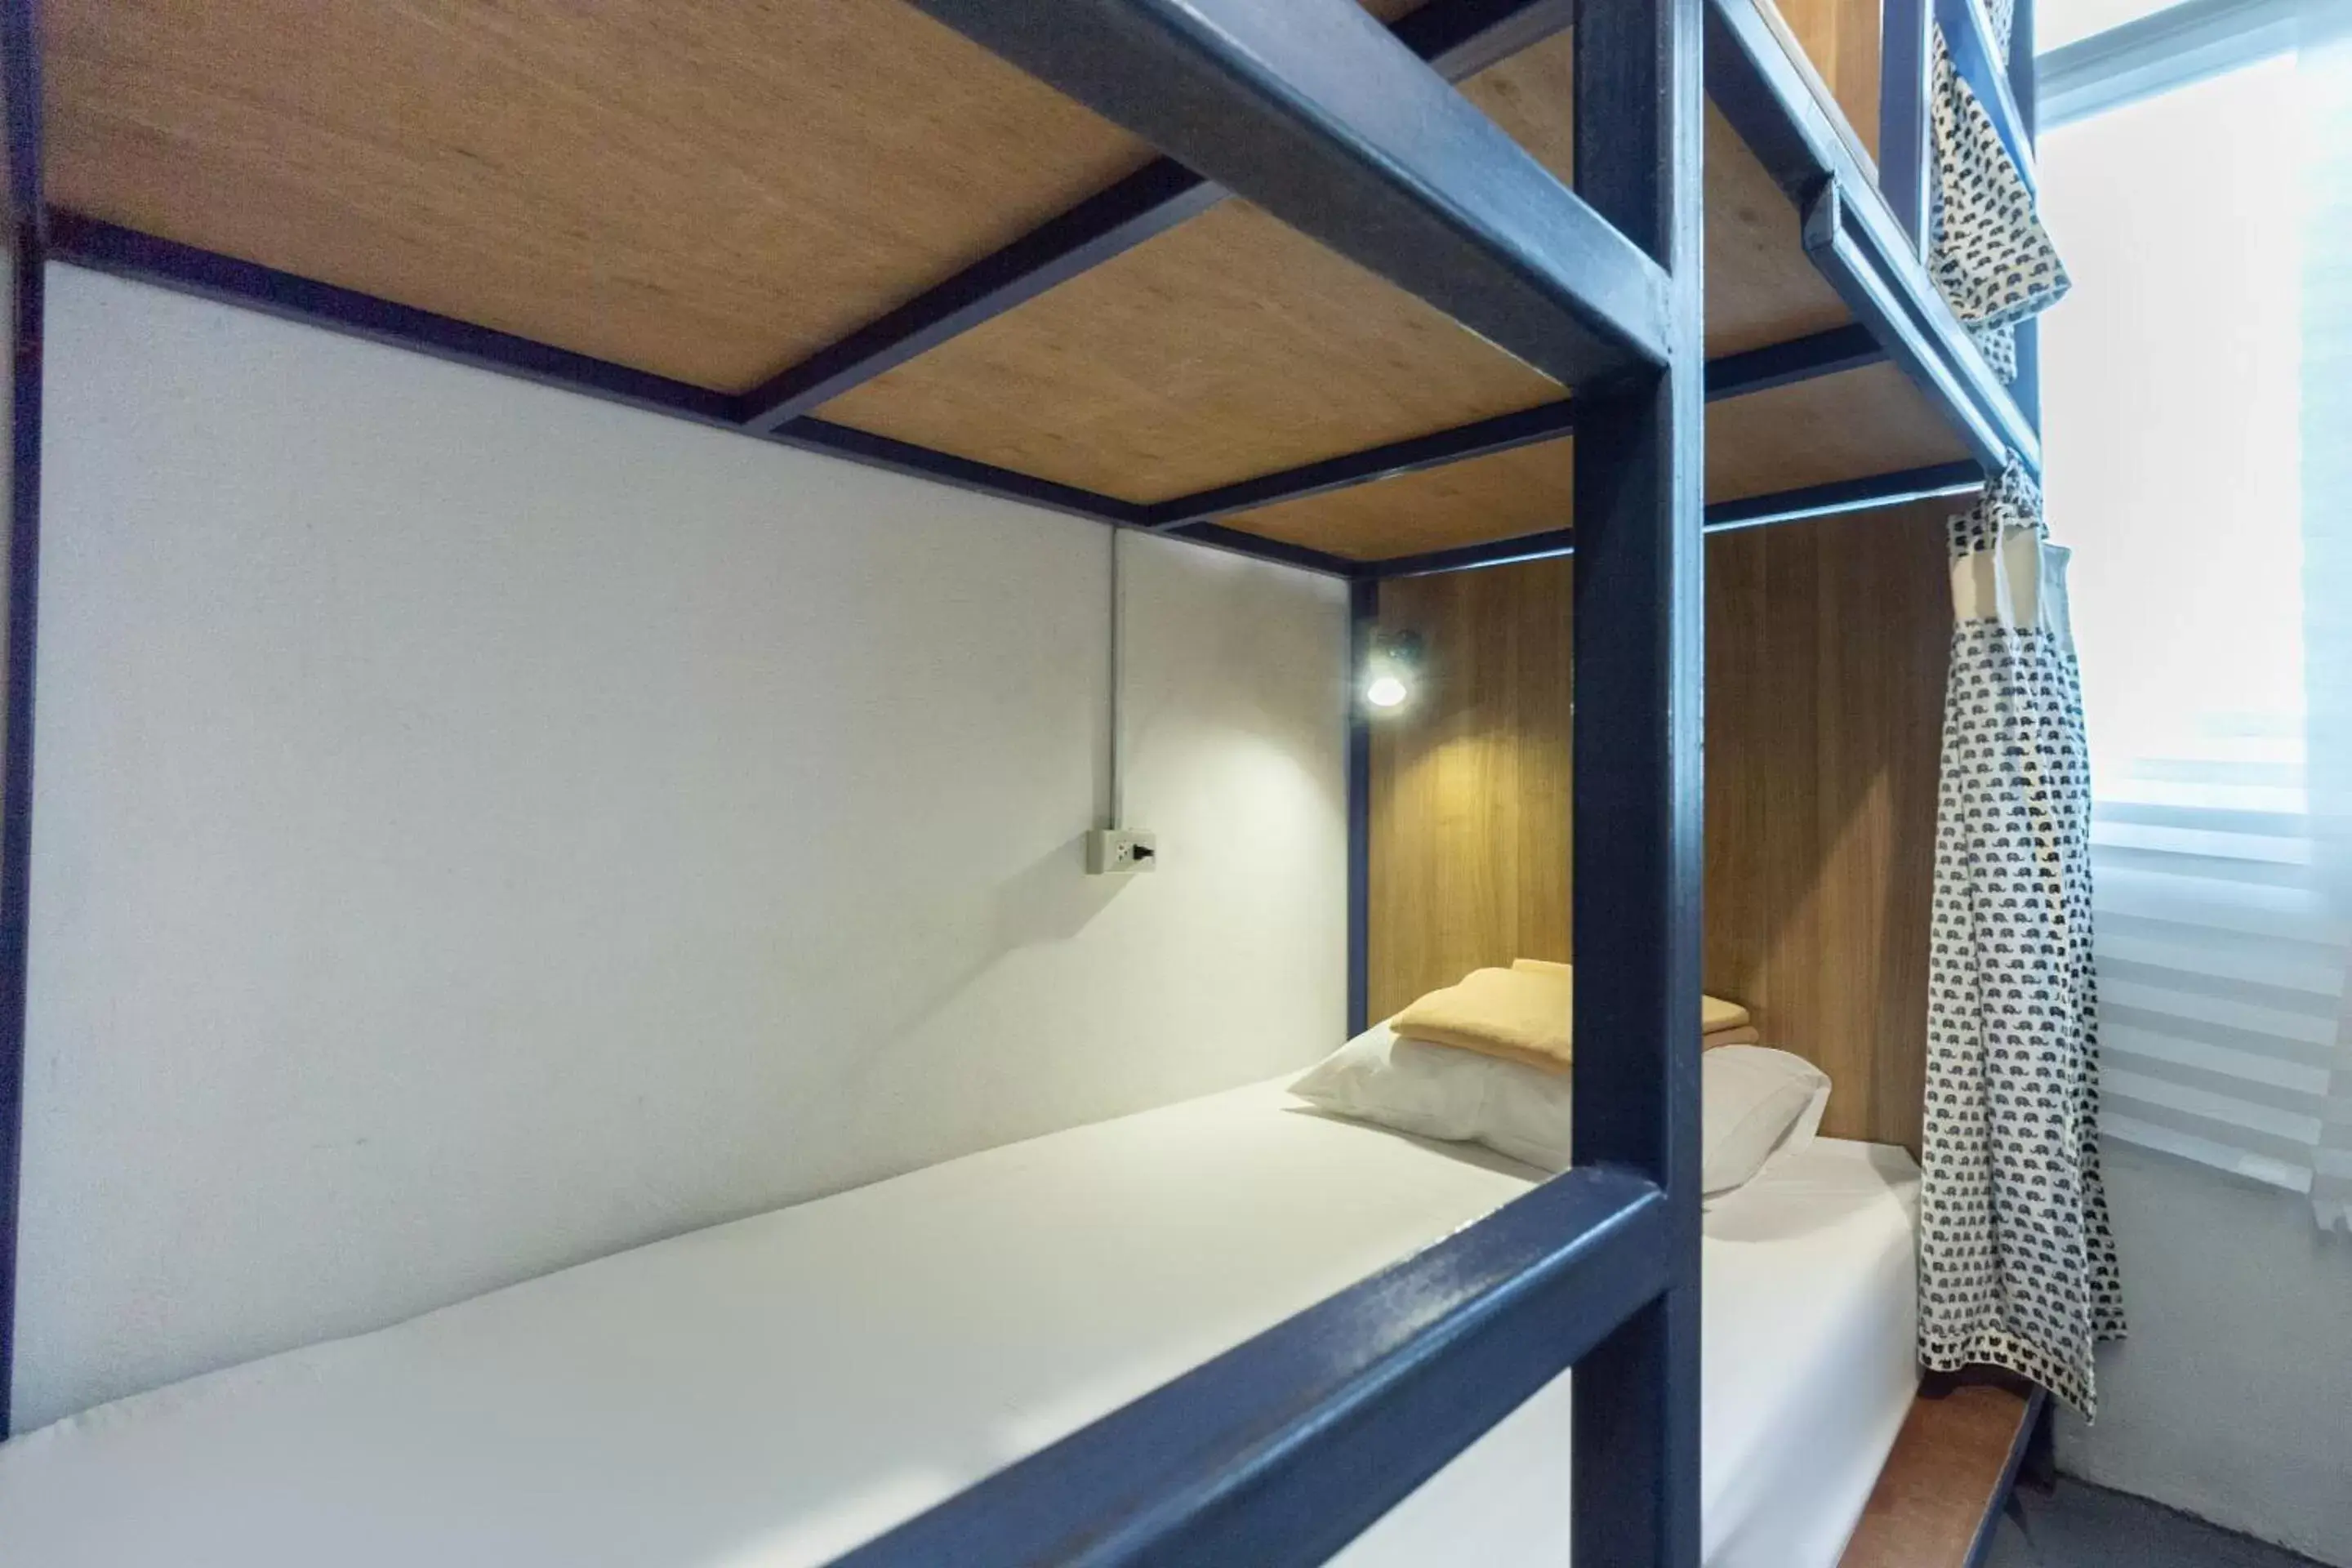 Bedroom, Bed in Hoft Hostel Bangkok